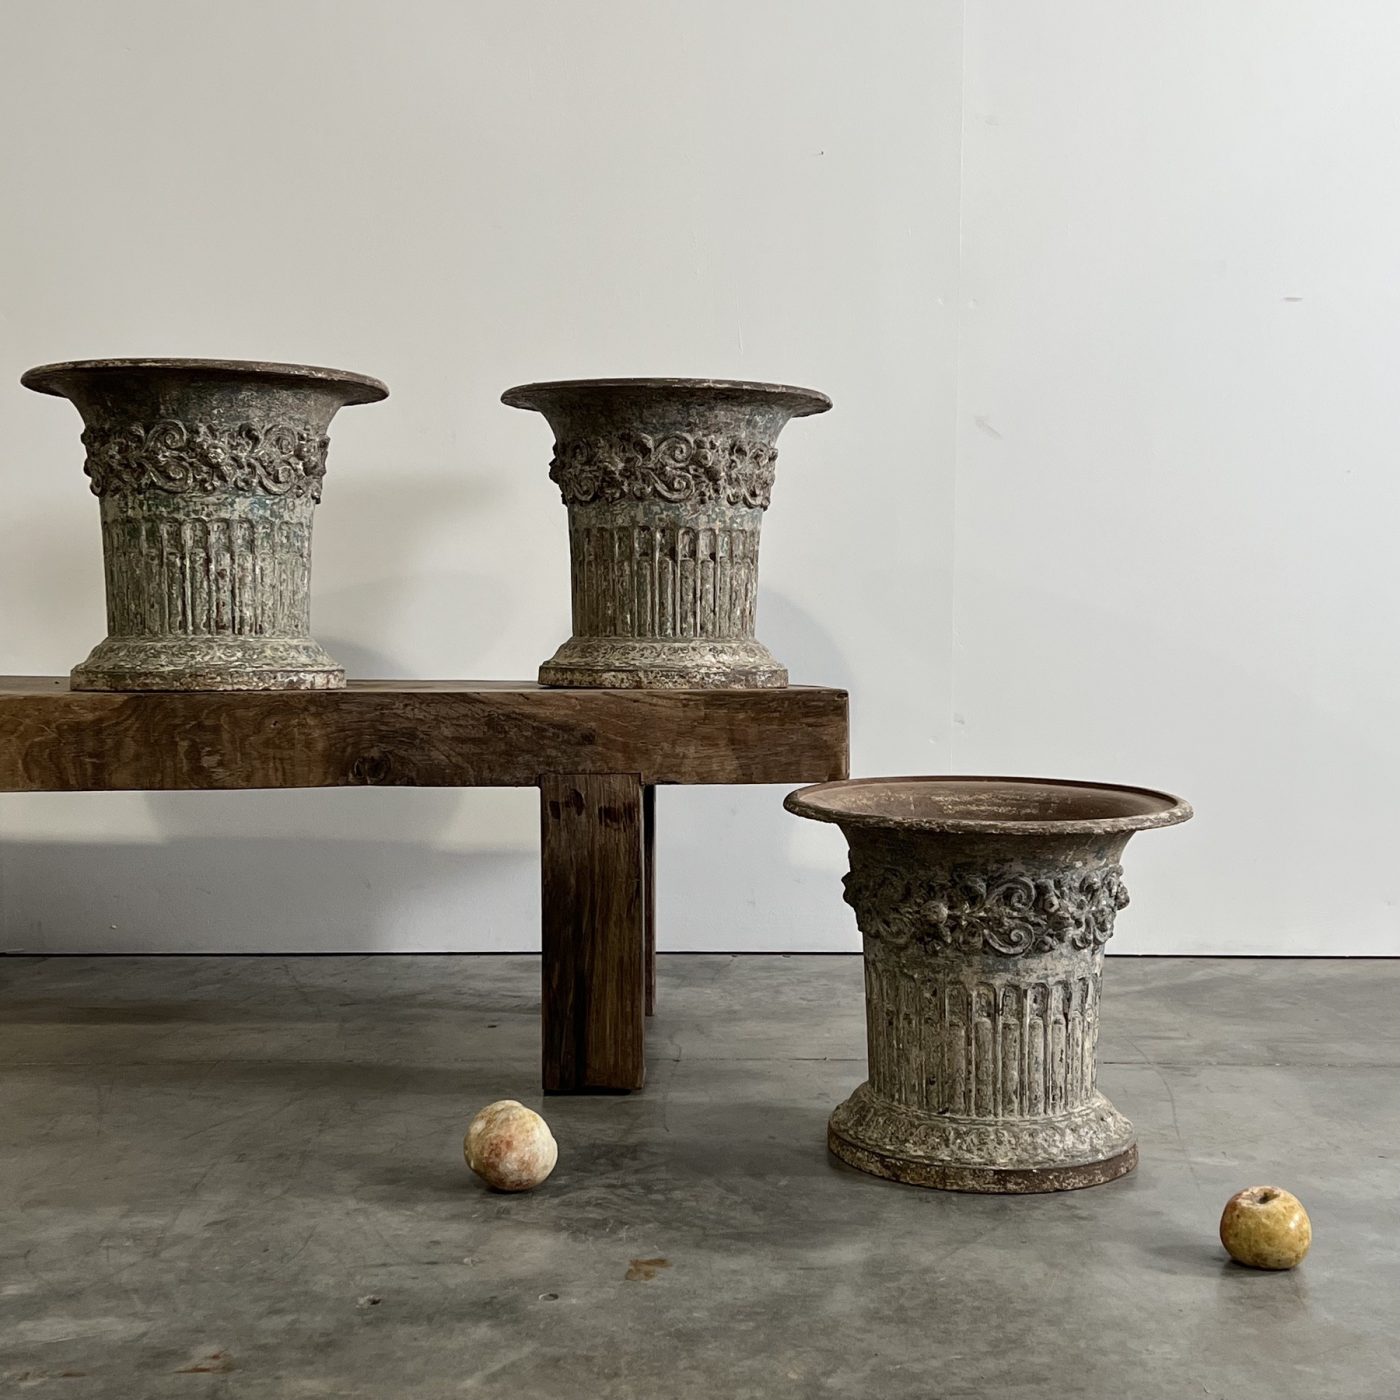 objet-vagabond-garden-urns0001